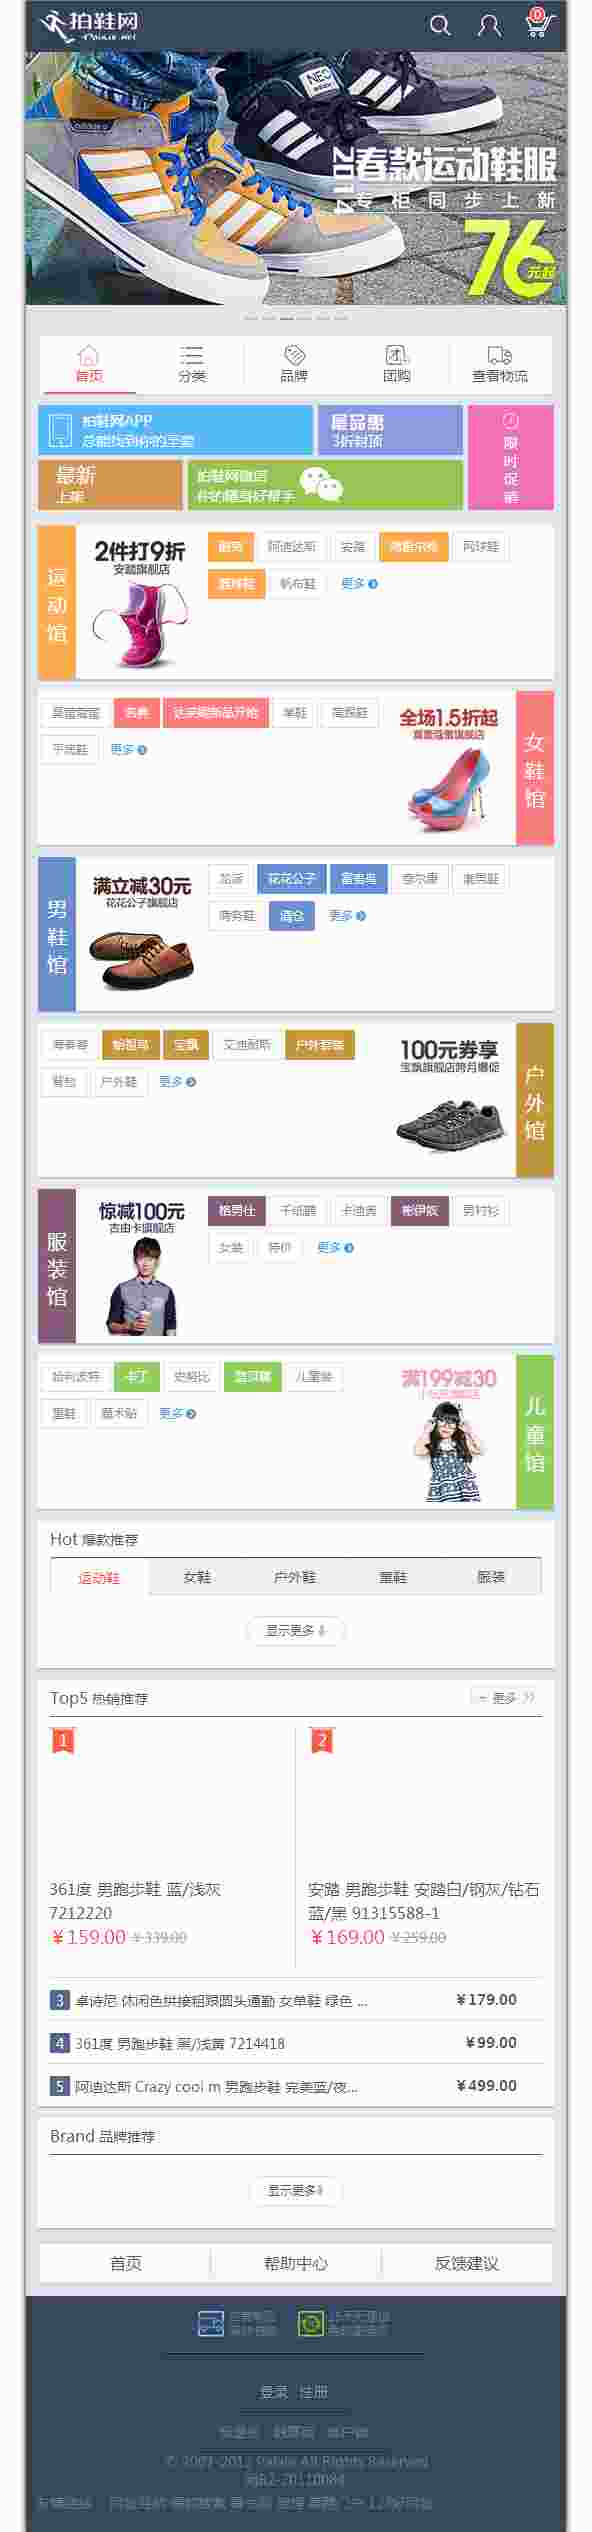 超炫购物模板仿拍鞋网商城首页触屏版html5手机wap购物网站模板